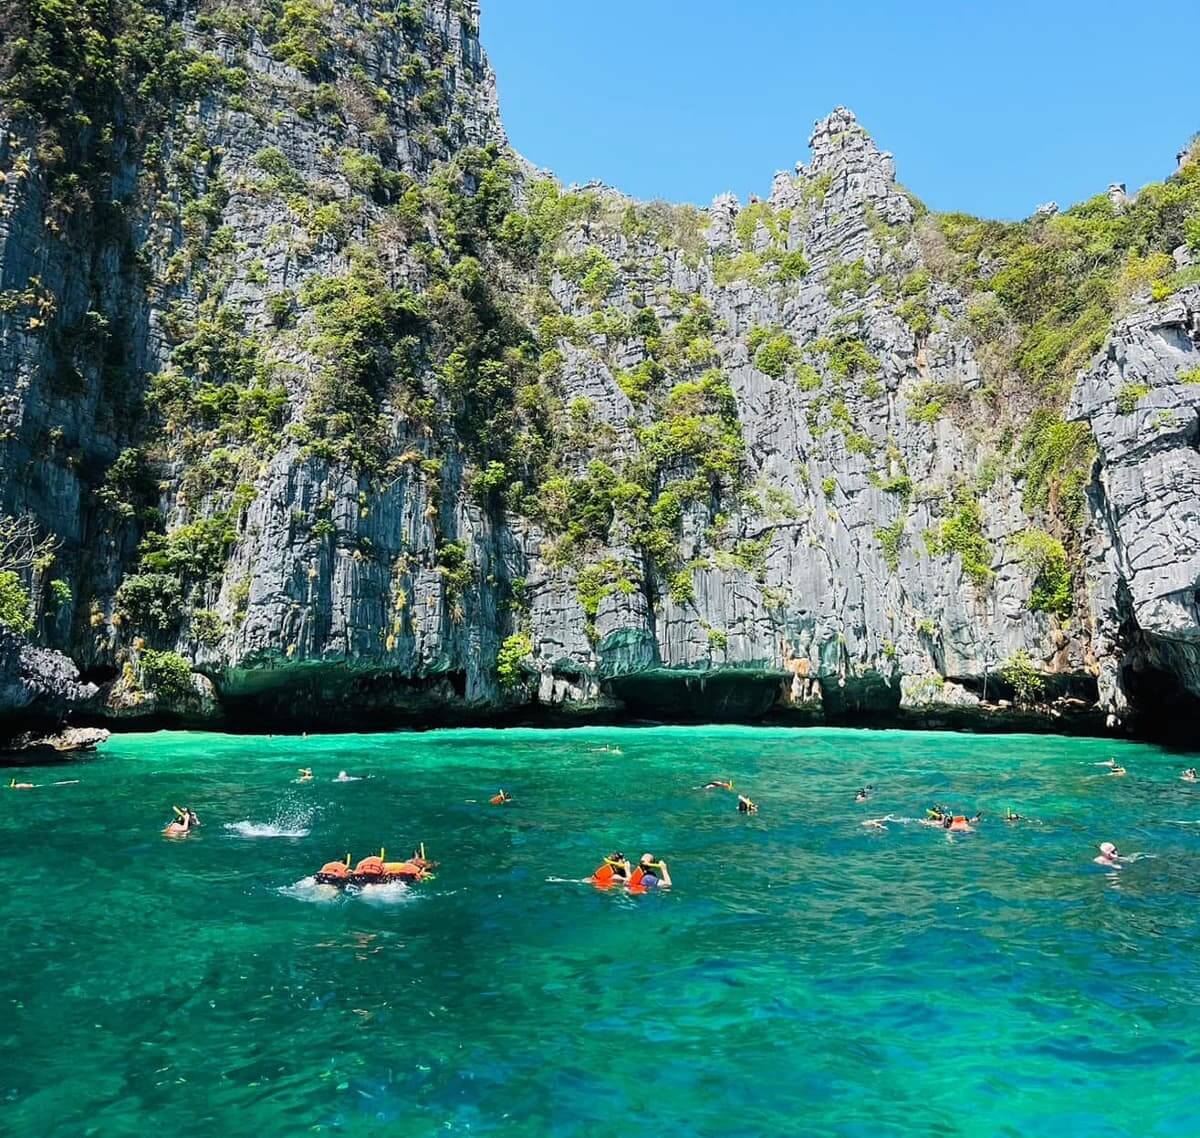 phi-phi-island-from-krabi-amazing-thailand-honeymoon-10-days.jpeg